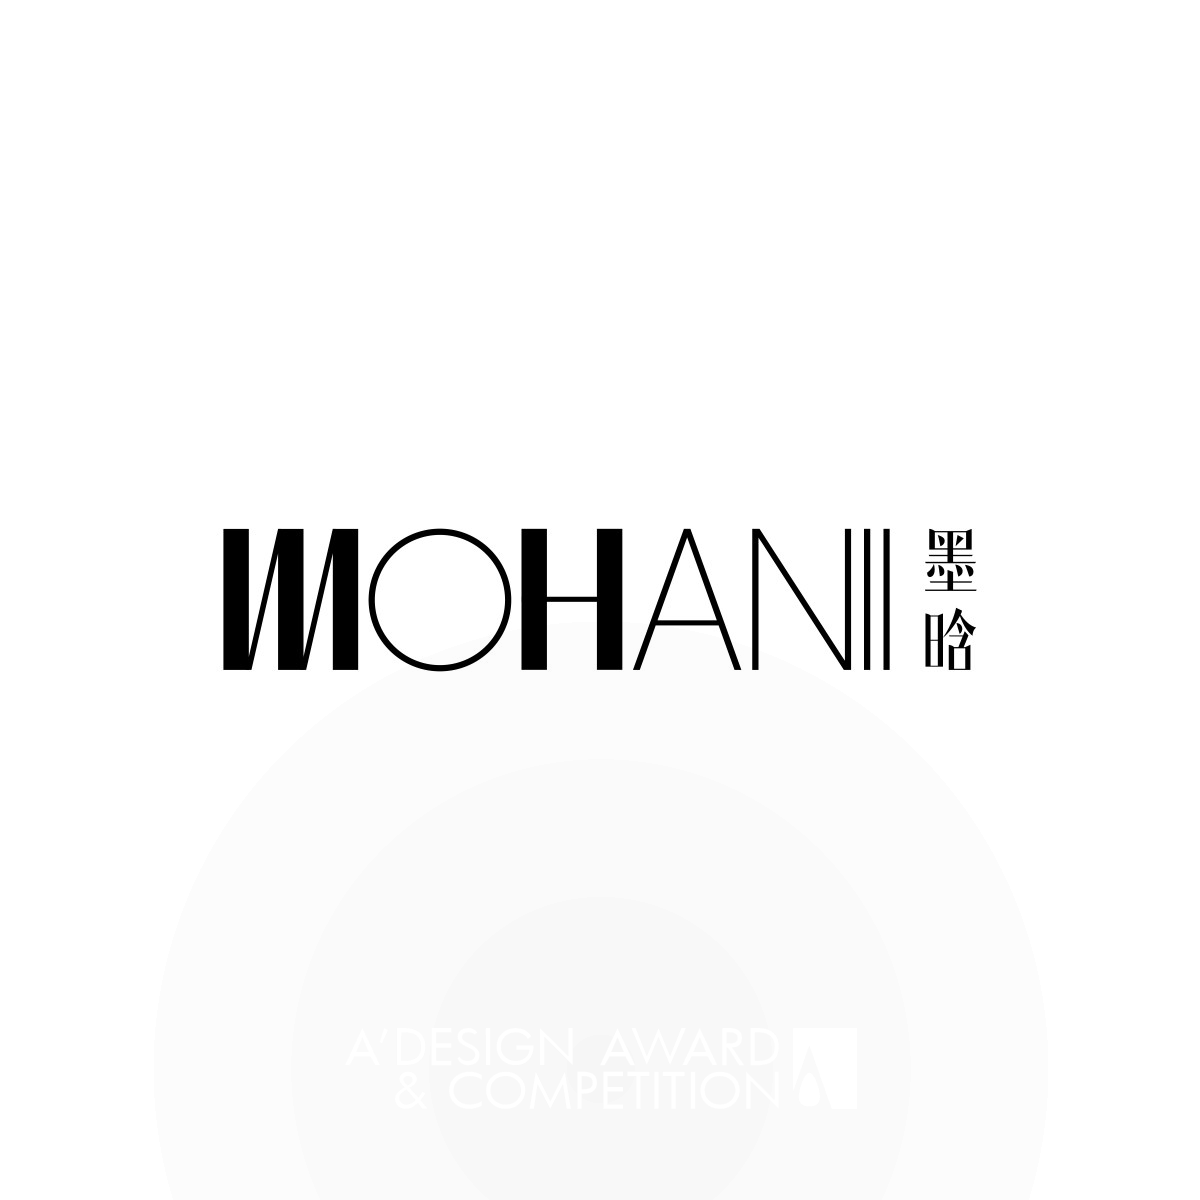 Mohanii Brand Identity by Wei Sun